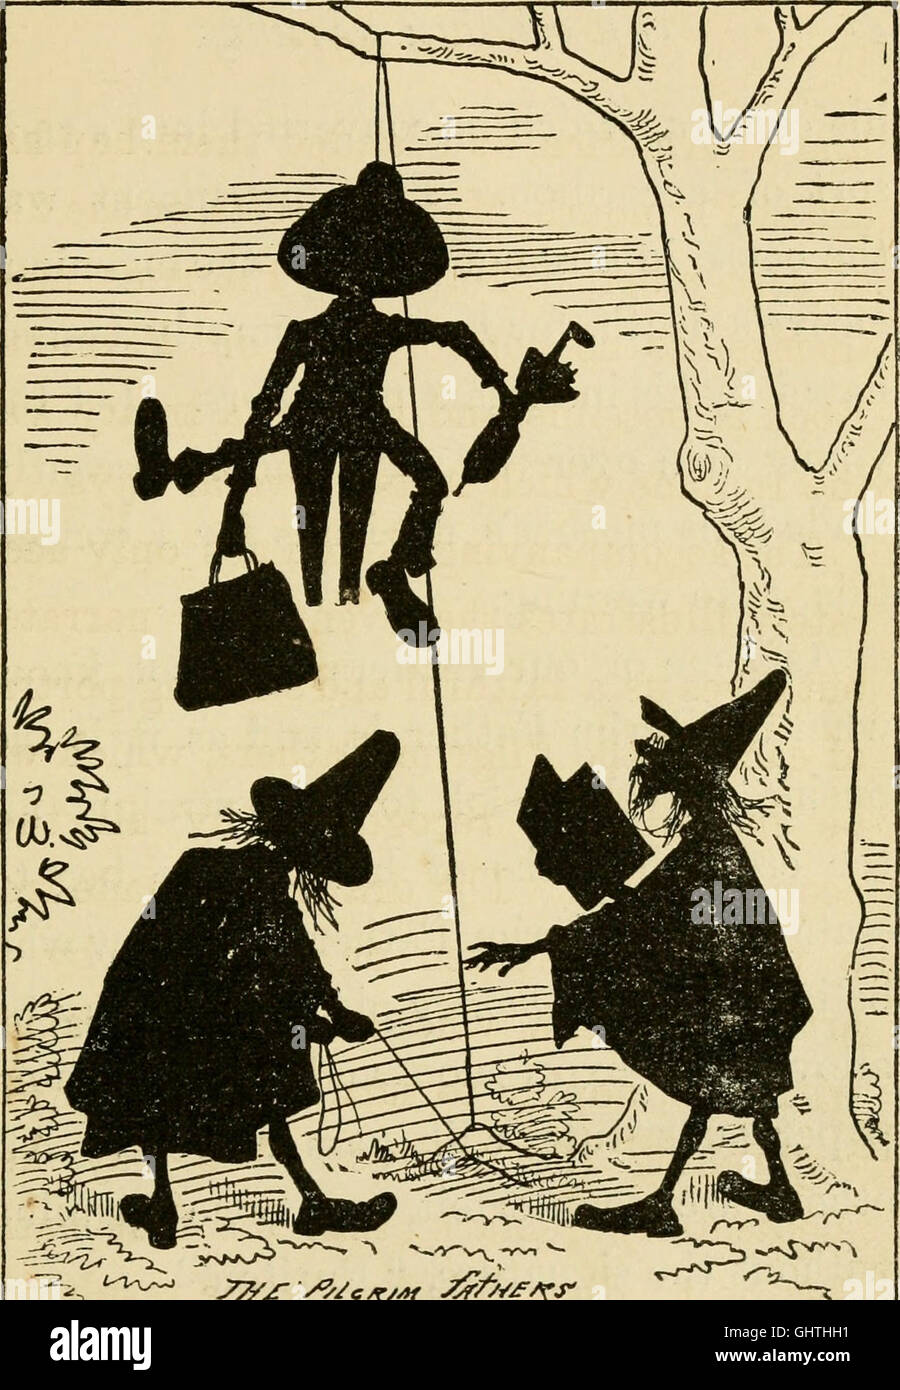 Un cómic de la historia de los Estados Unidos (1880) Foto de stock